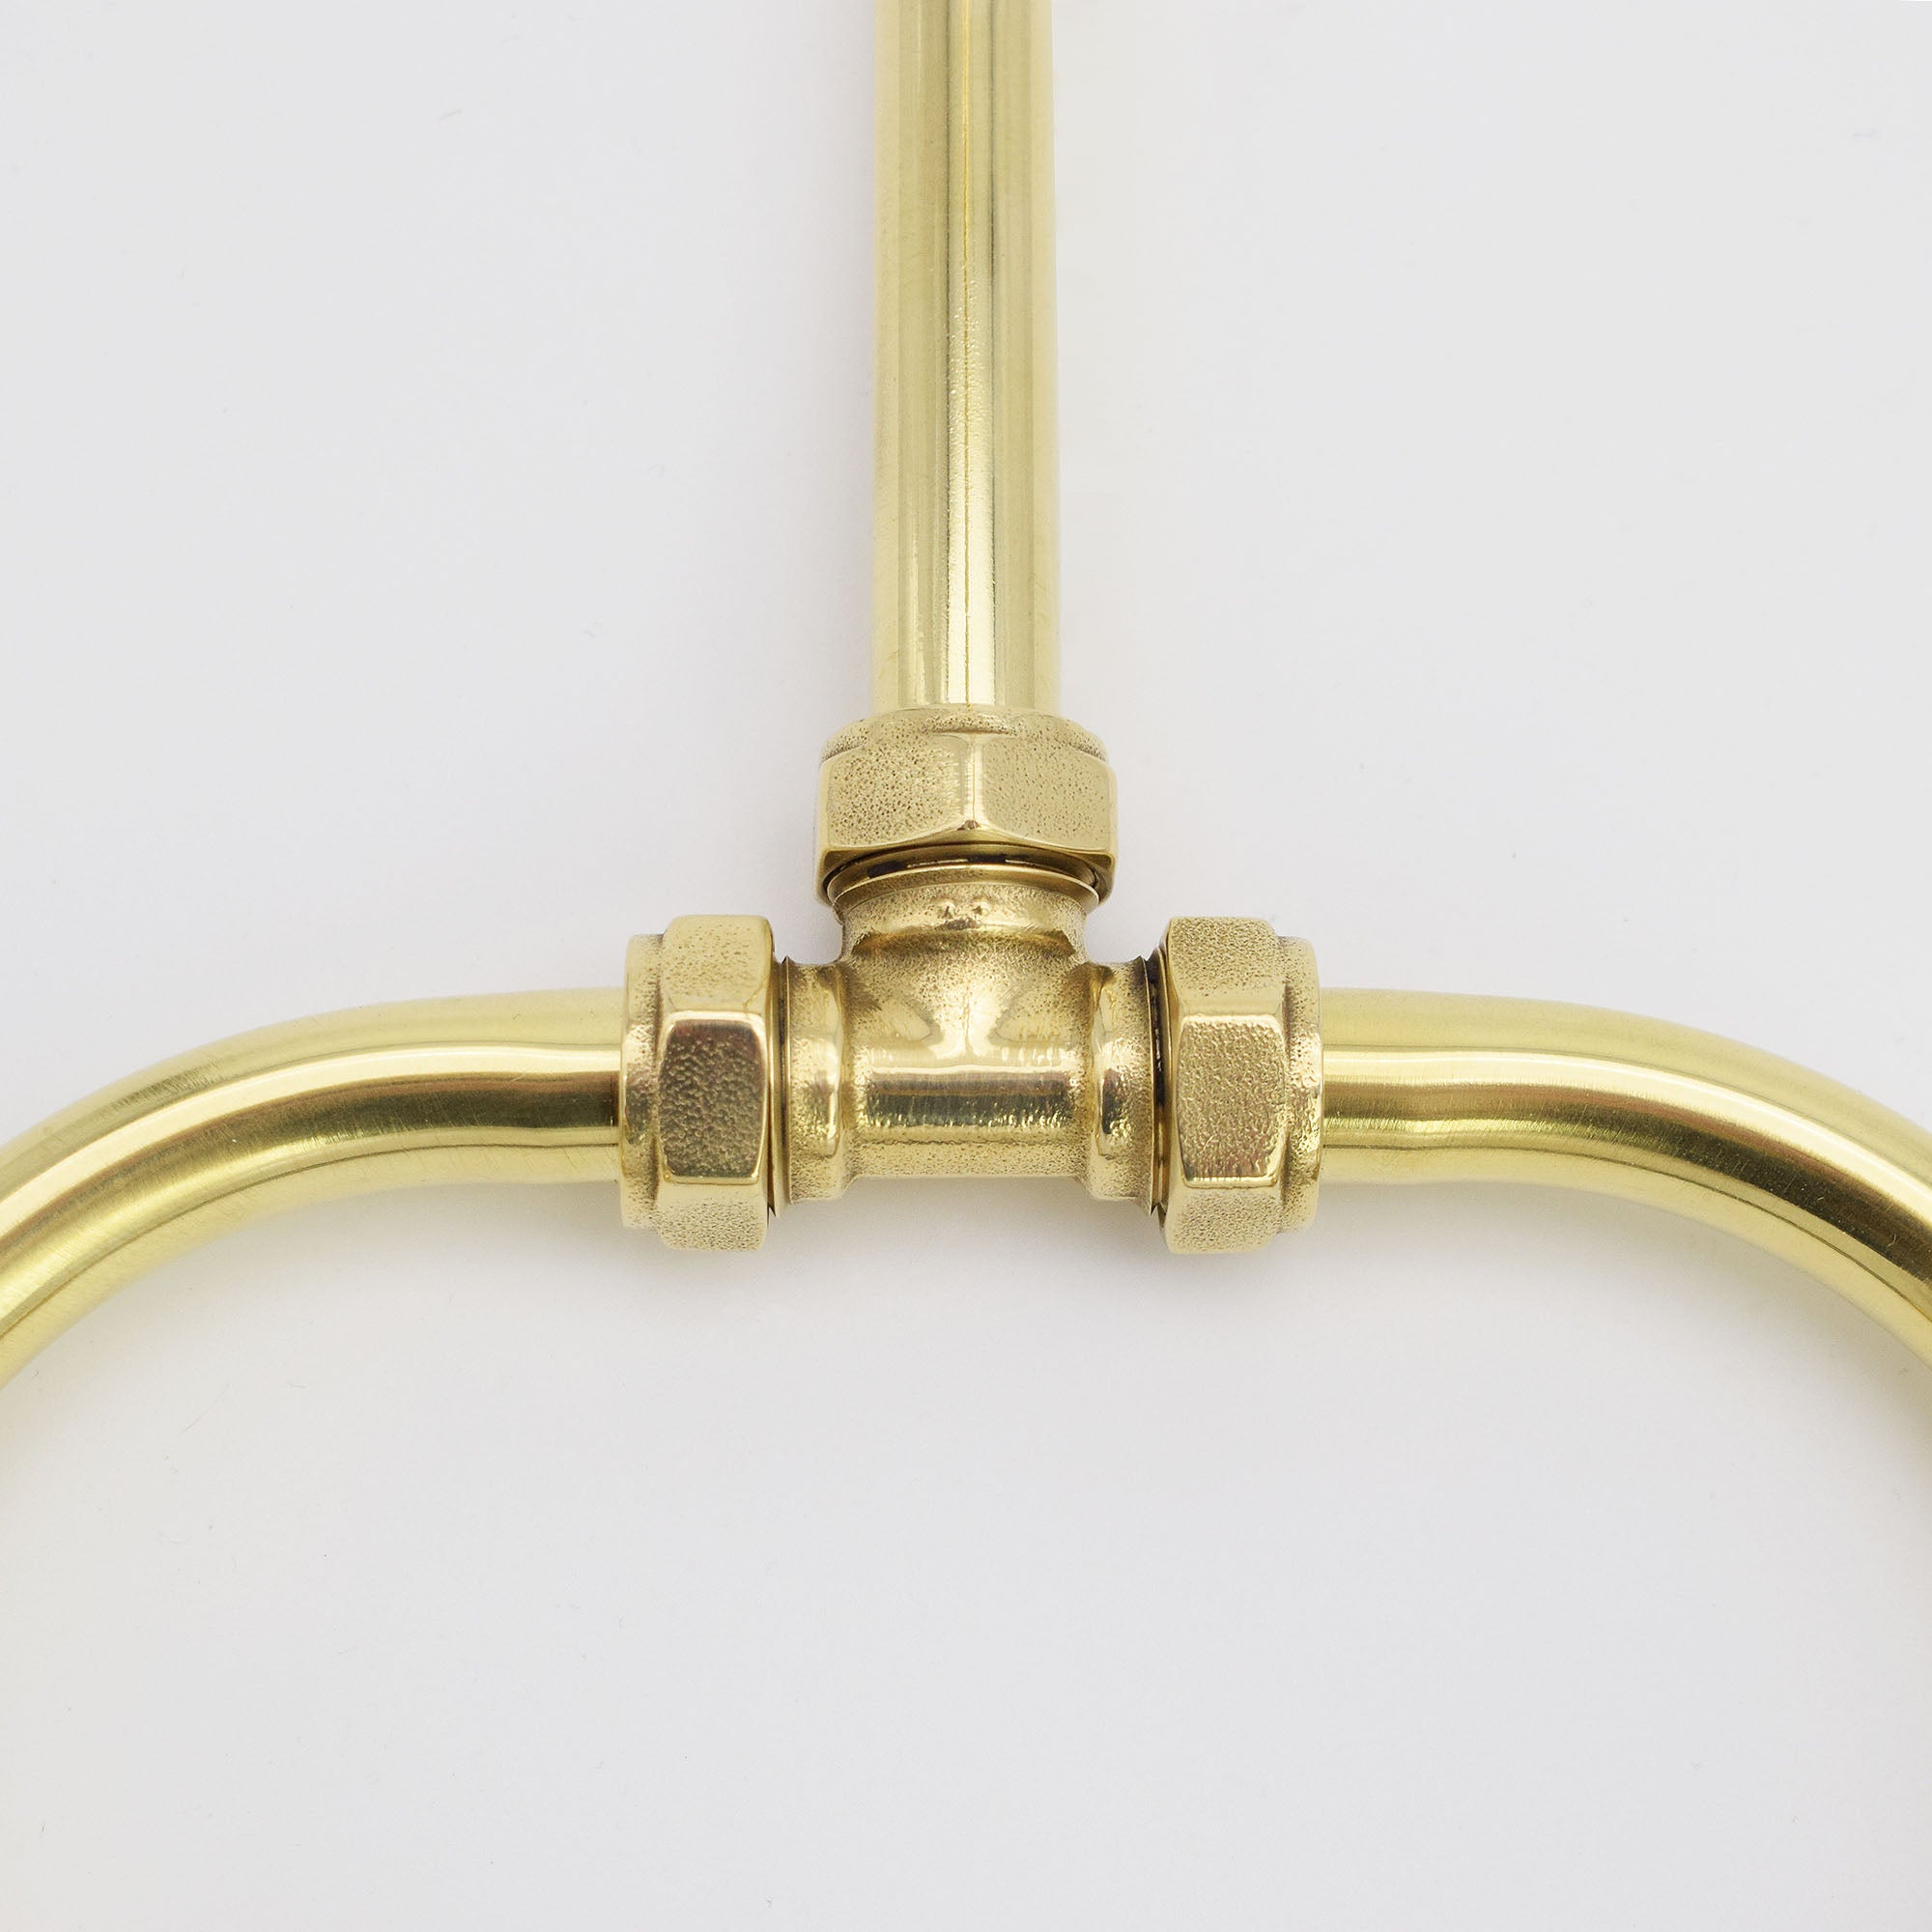 brass tap closeup detail